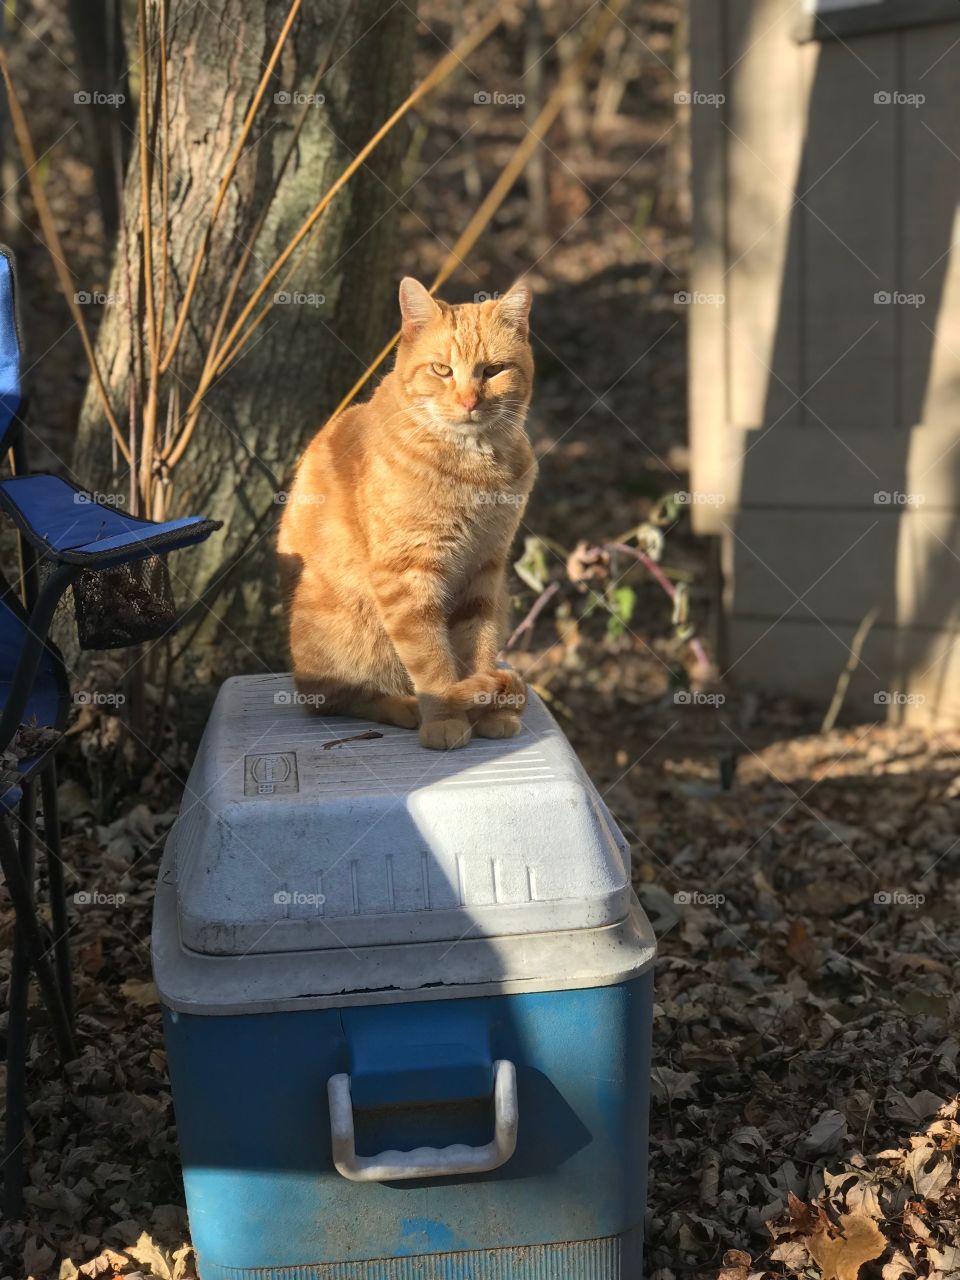 Orange cat on a cooler